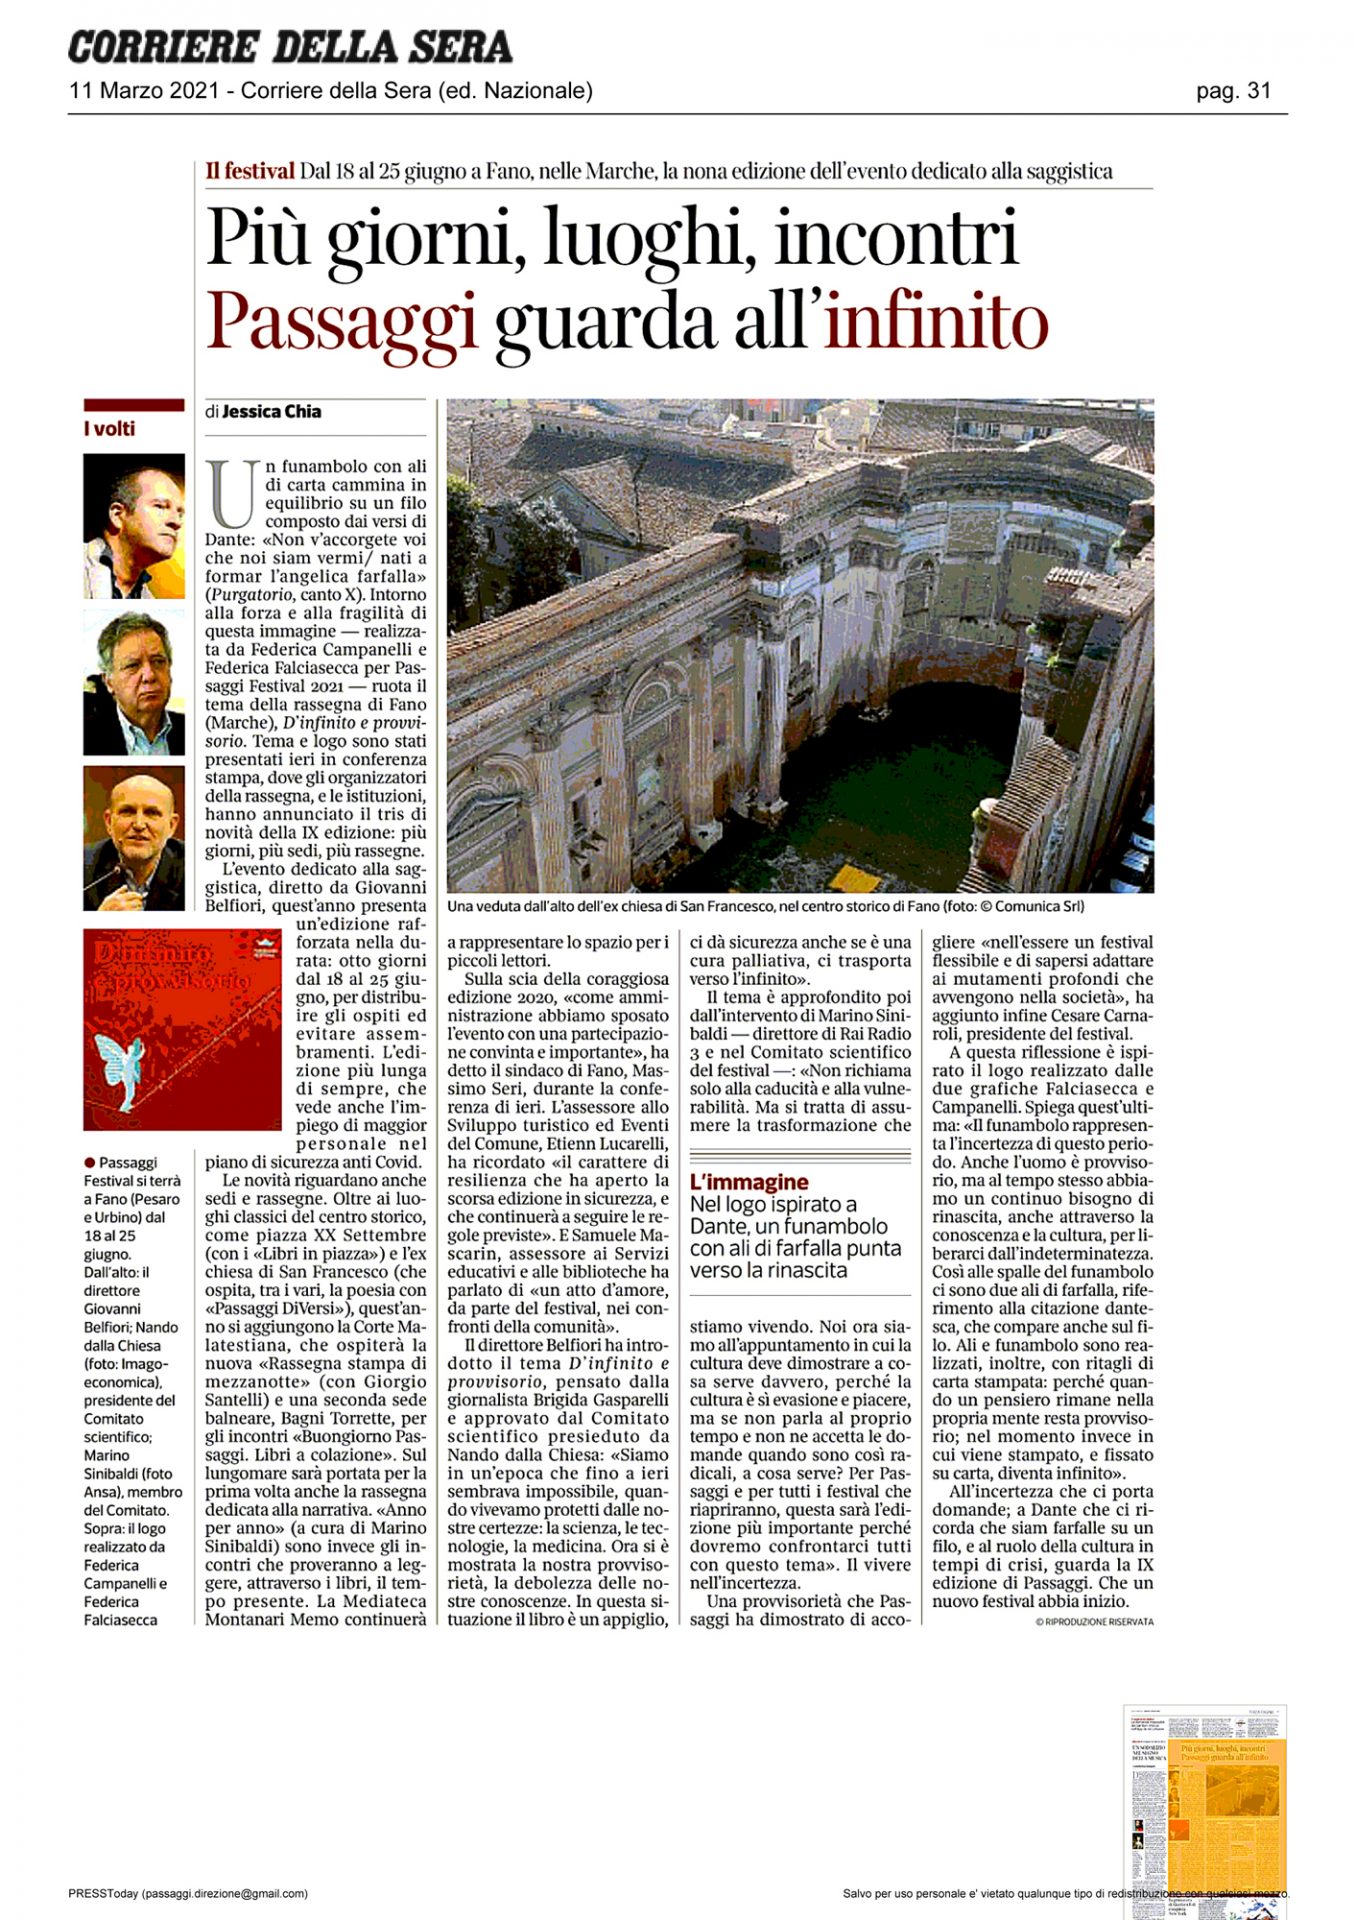 Corriere_della_Sera-piu-giorni-luoghi-incontri-passaggi-guarda-all-infinito